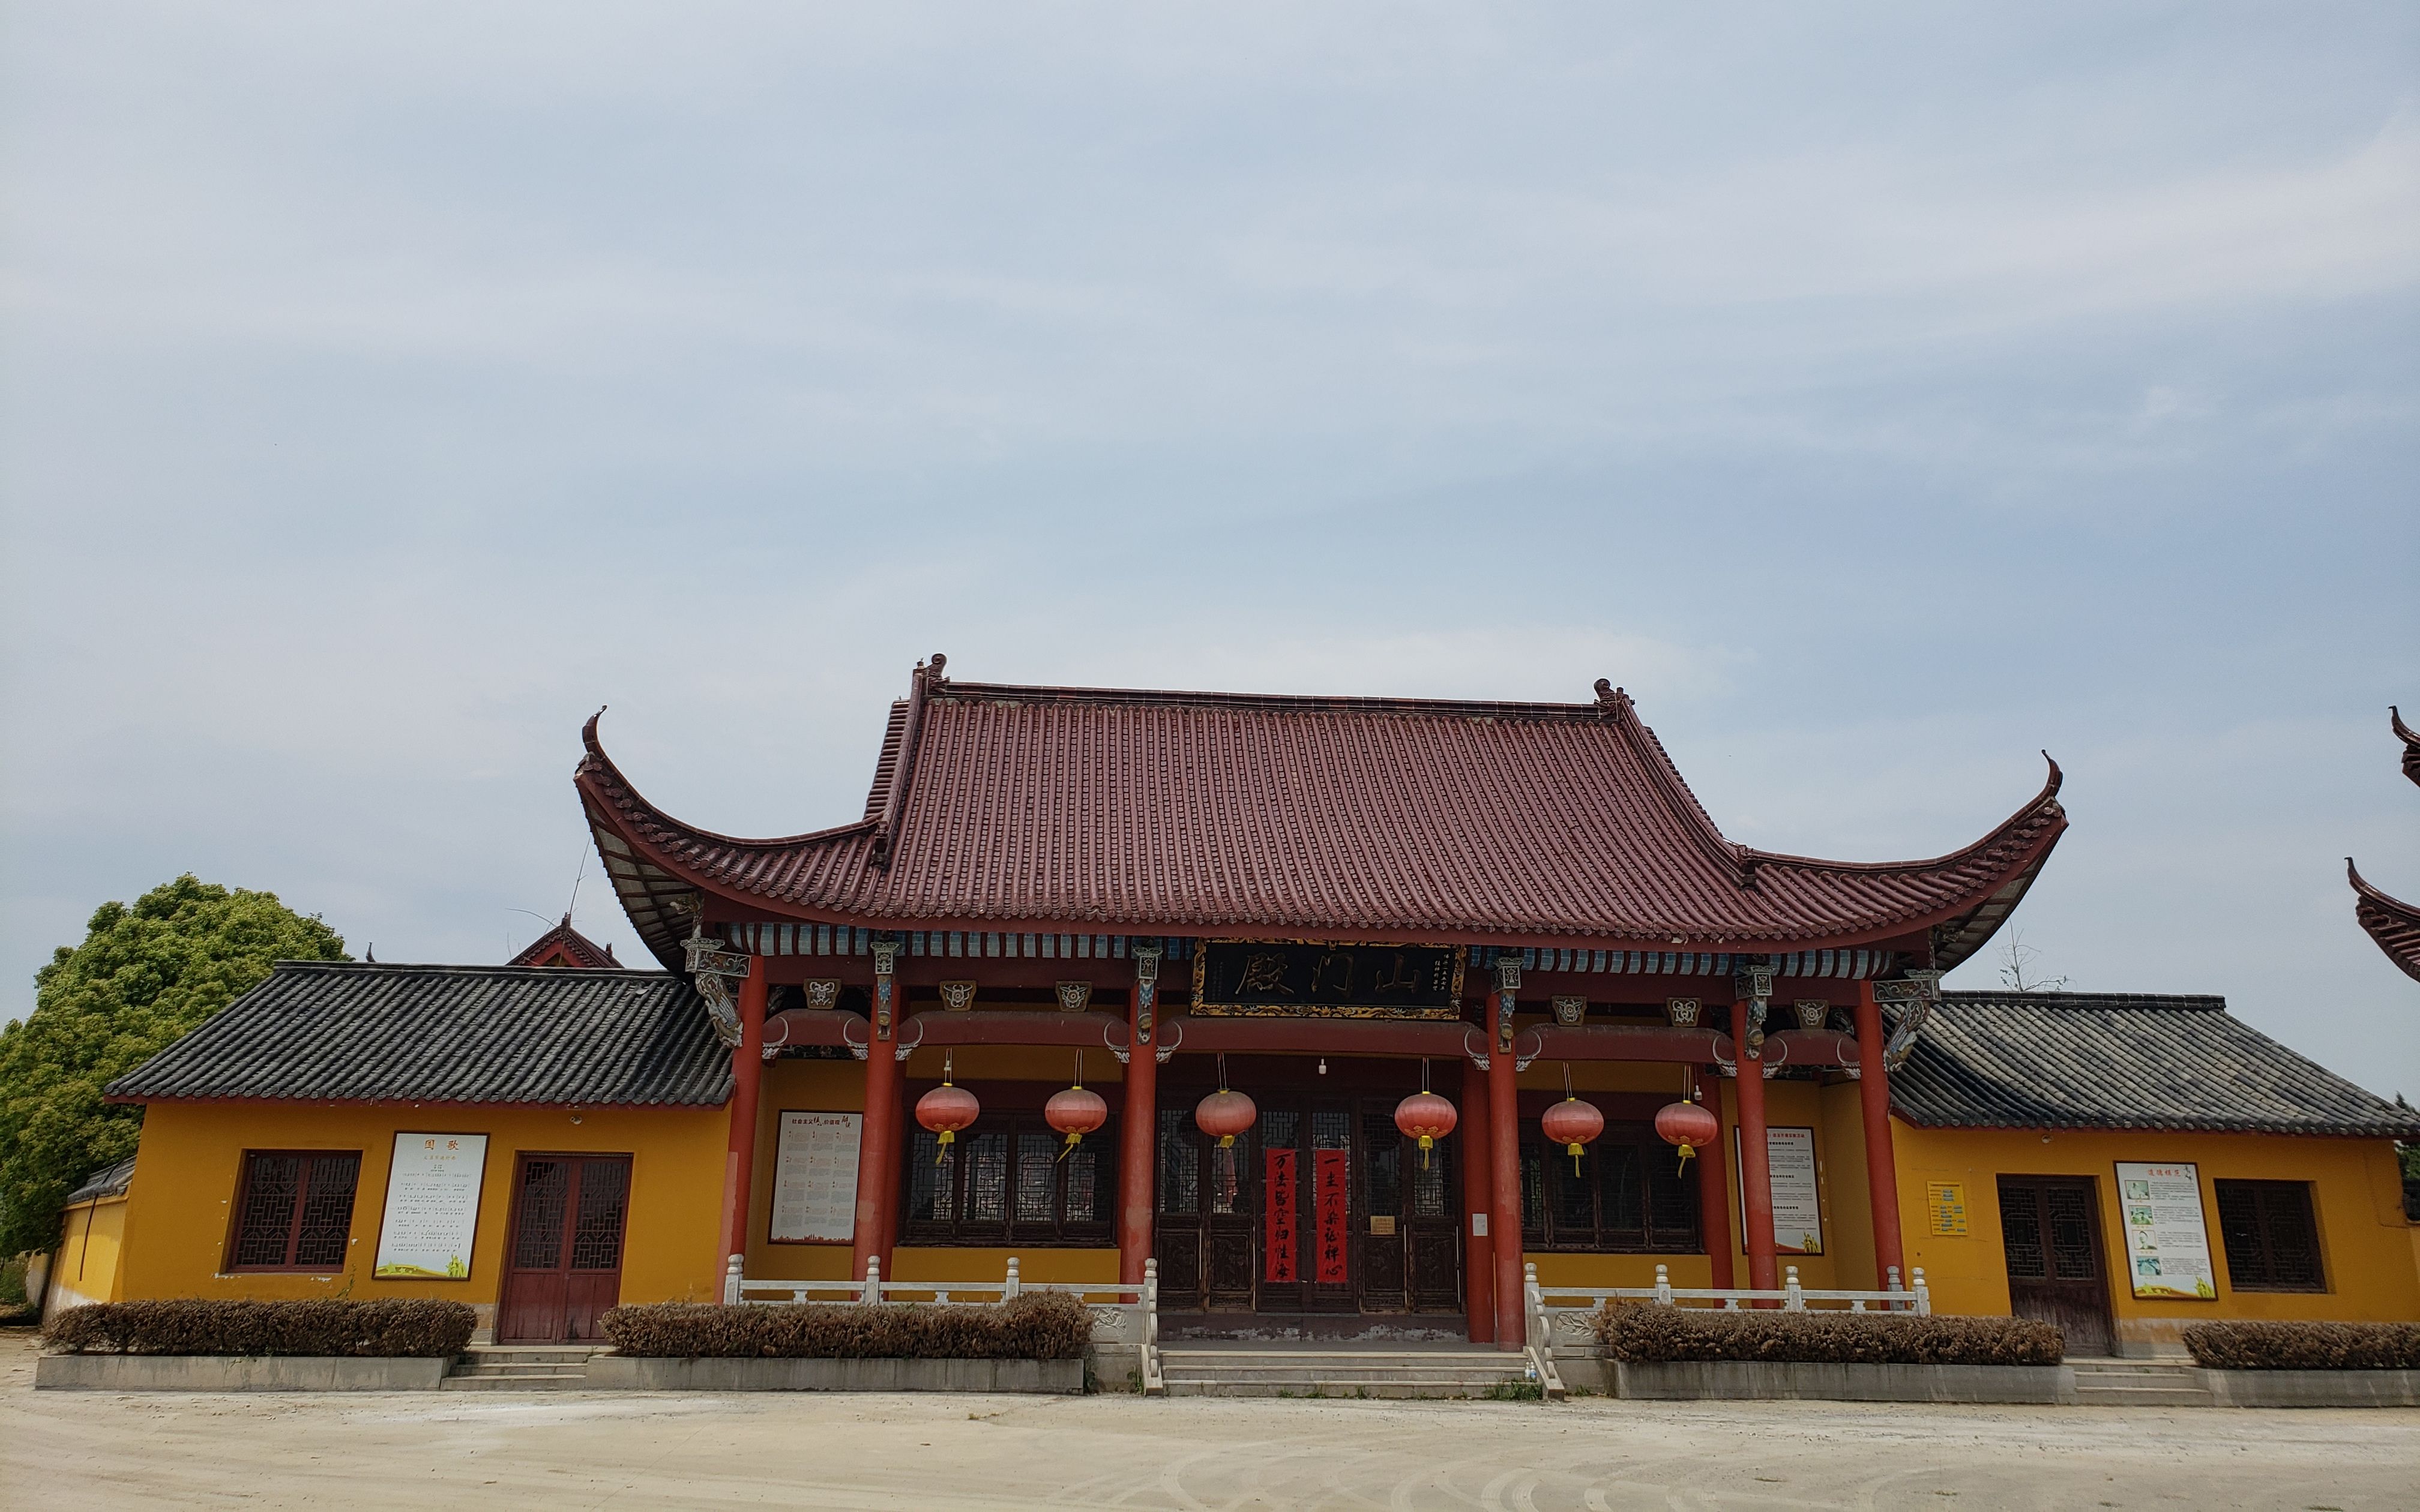 在合肥市肥东县撮镇的偏僻乡村,有座始于宋代传说的甘露寺